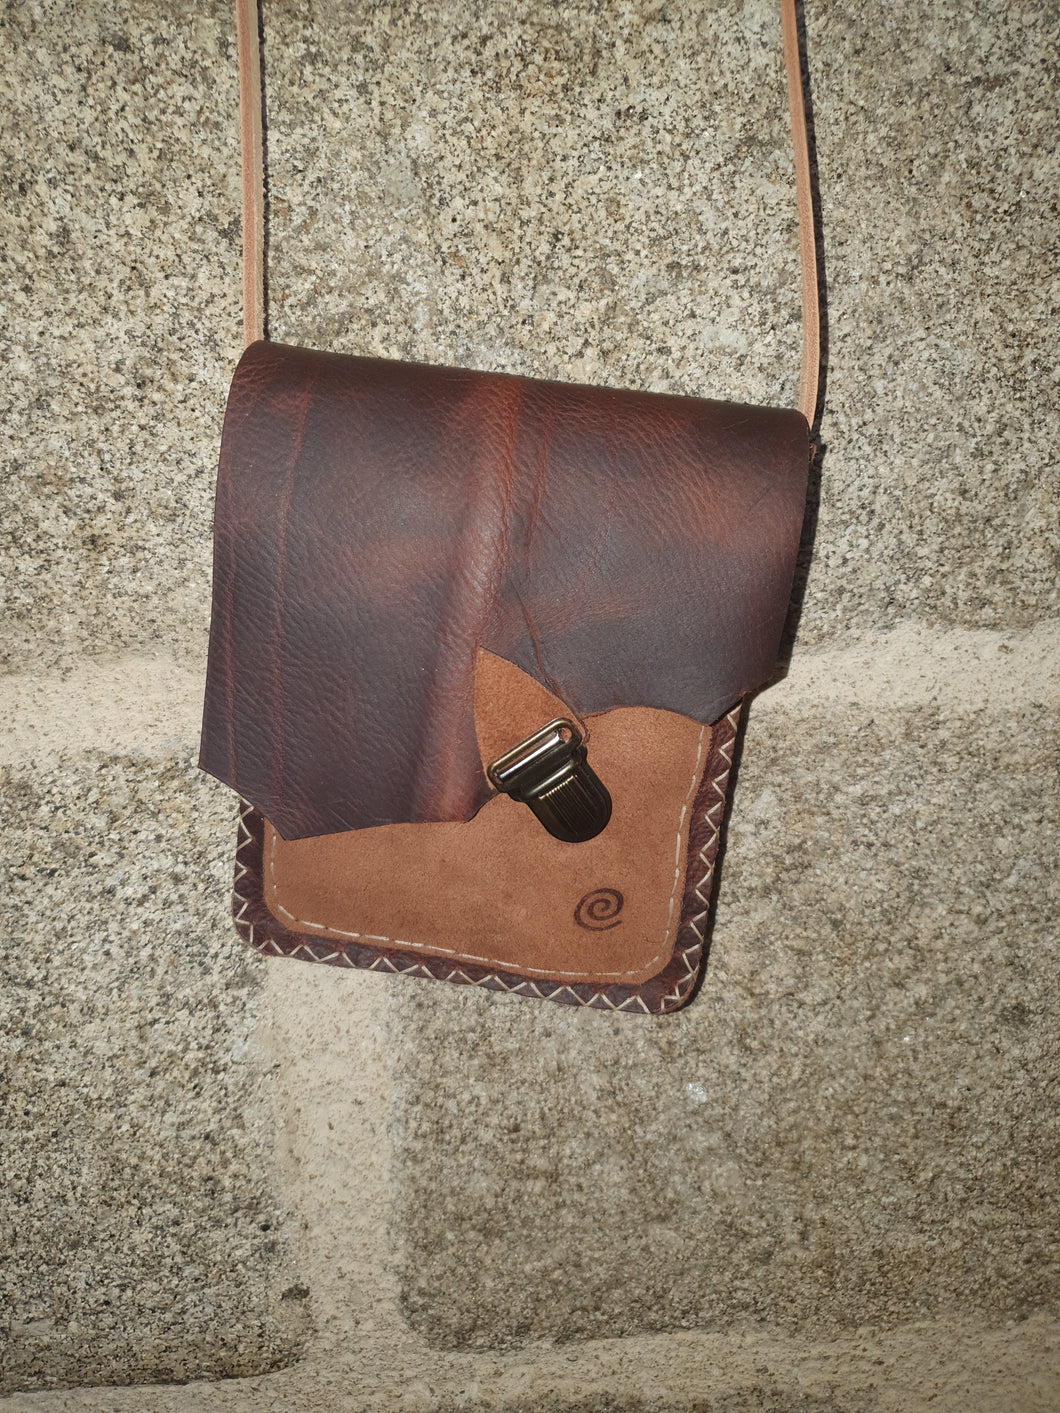 Petit sac artisanal rectangle en cuir marron et marron clair retourné, fermeture attache cartable